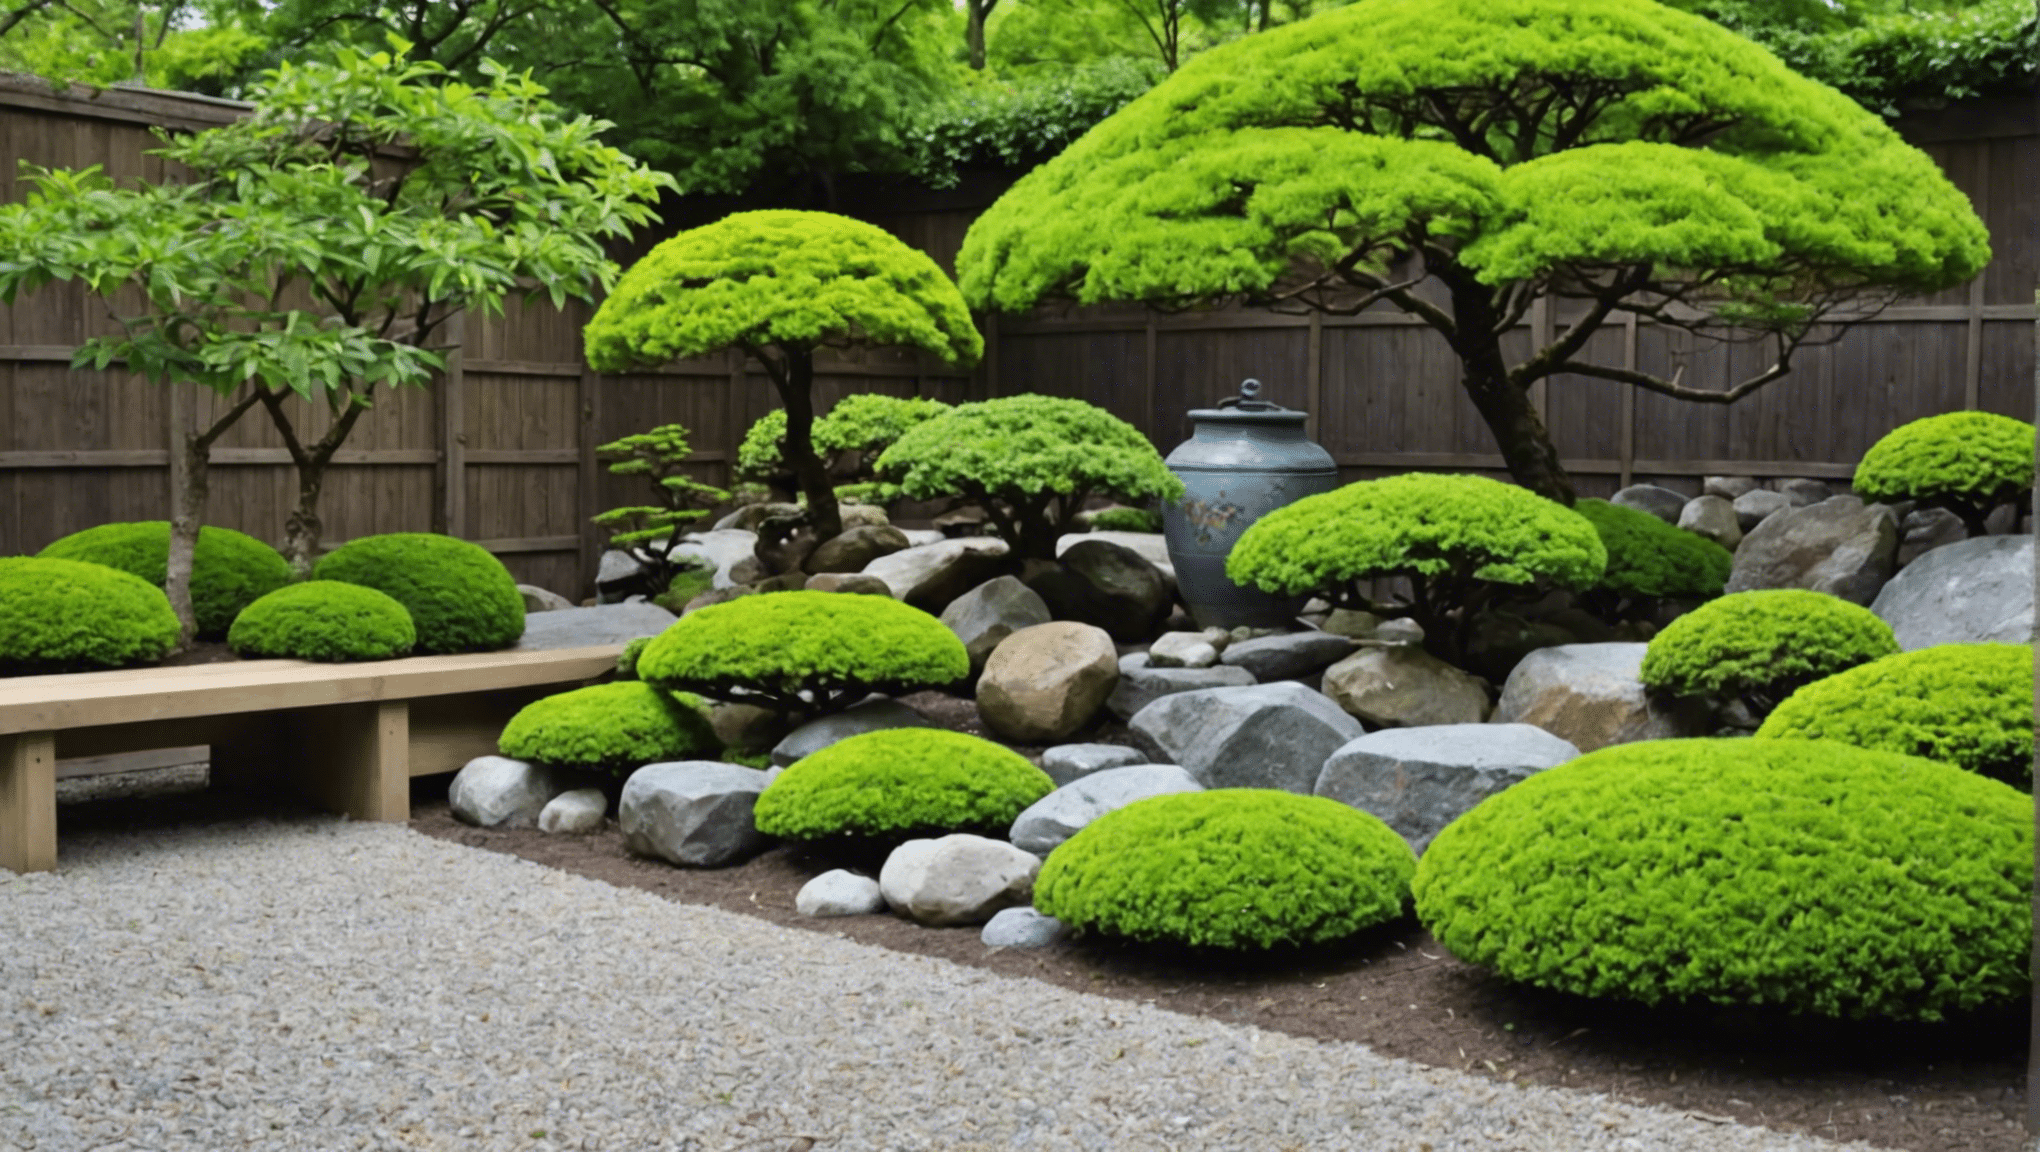 専門家の洞察とアドバイスにより、日本の園芸用具が素晴らしい庭を作る鍵となるかどうかを調べます。